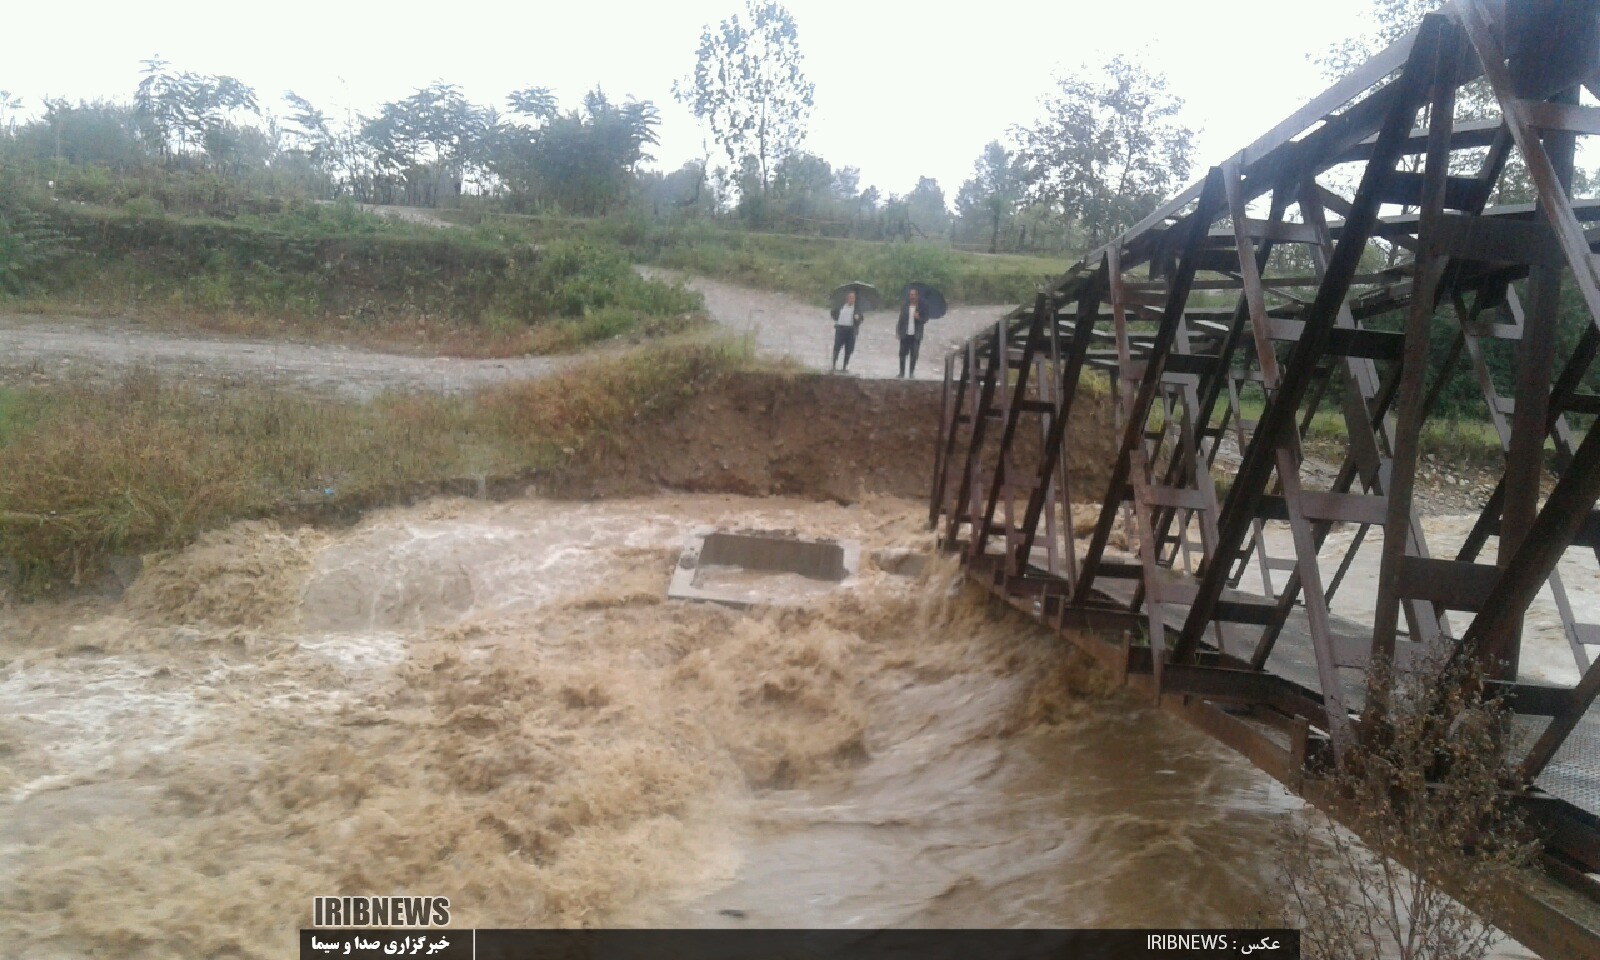 خسارت بارندگی شدید در گیلان/ آبگرفتگی معابر در برخی شهرستان ها / طغیان رودخانه و تخریب چند پل+تصاویر